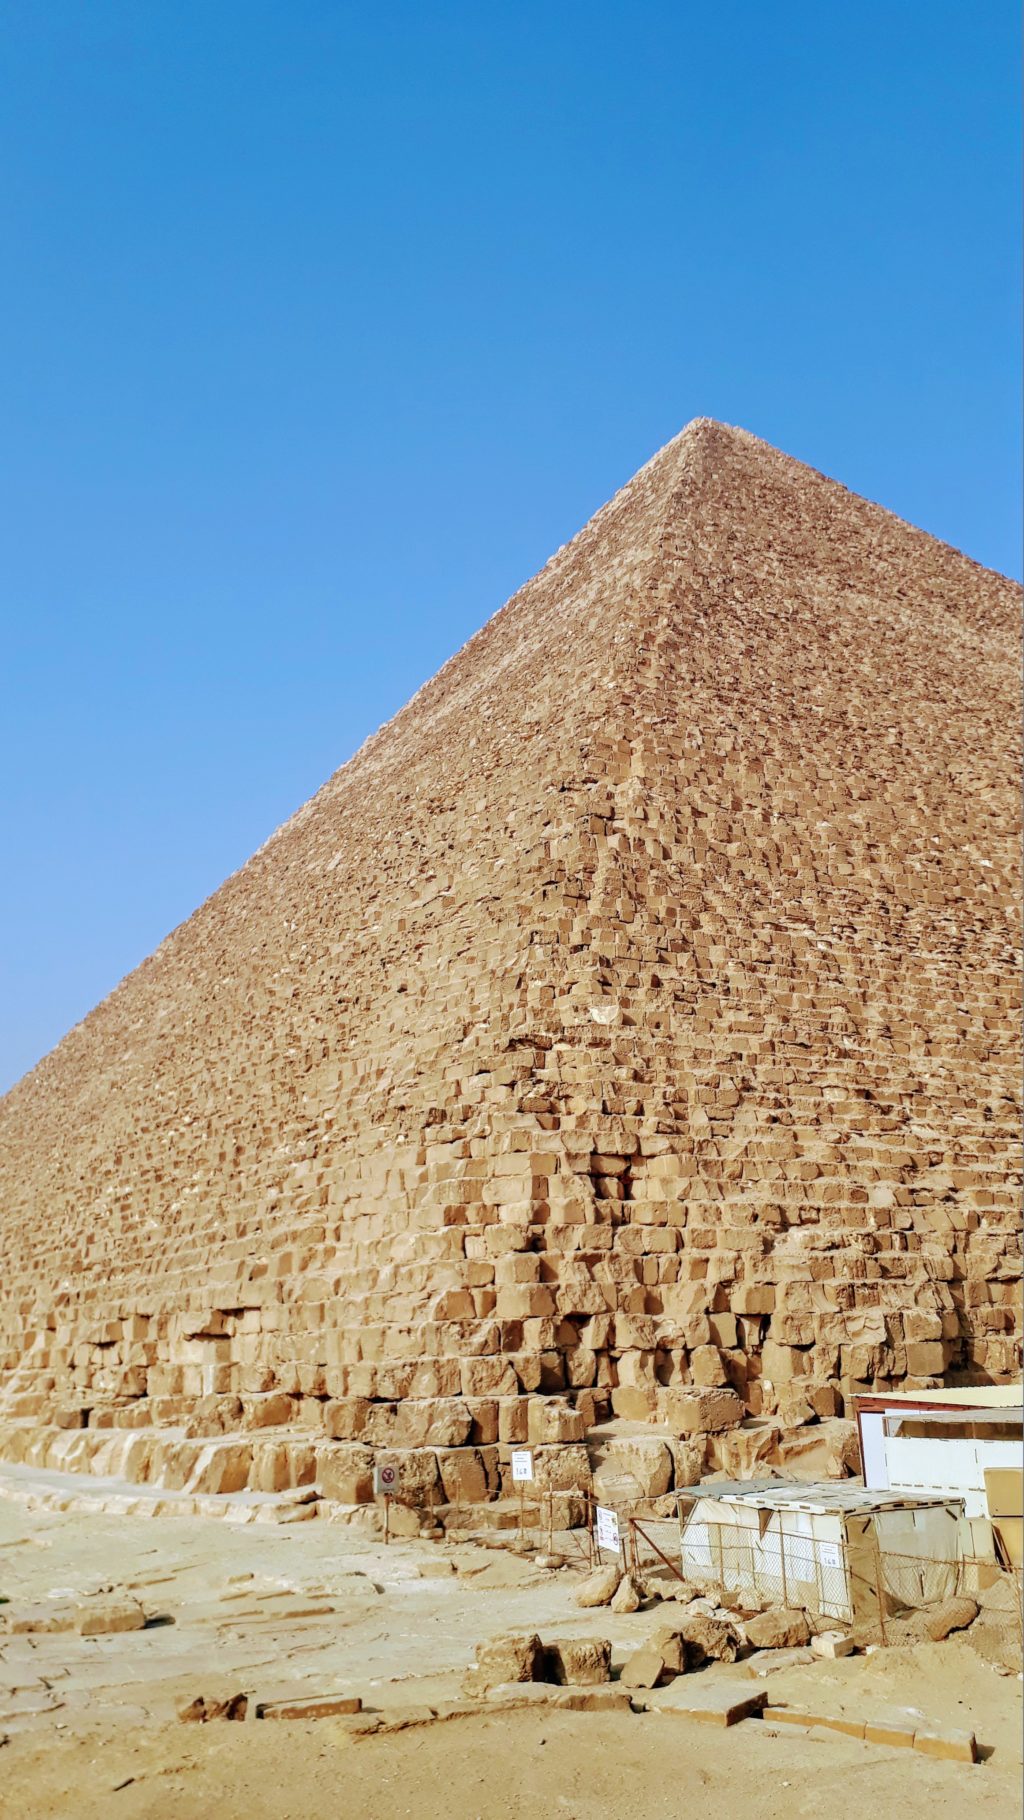 Die berühmten Pyramiden von Gizeh stehen wohl auf jeder To-See-Liste für Ägypten